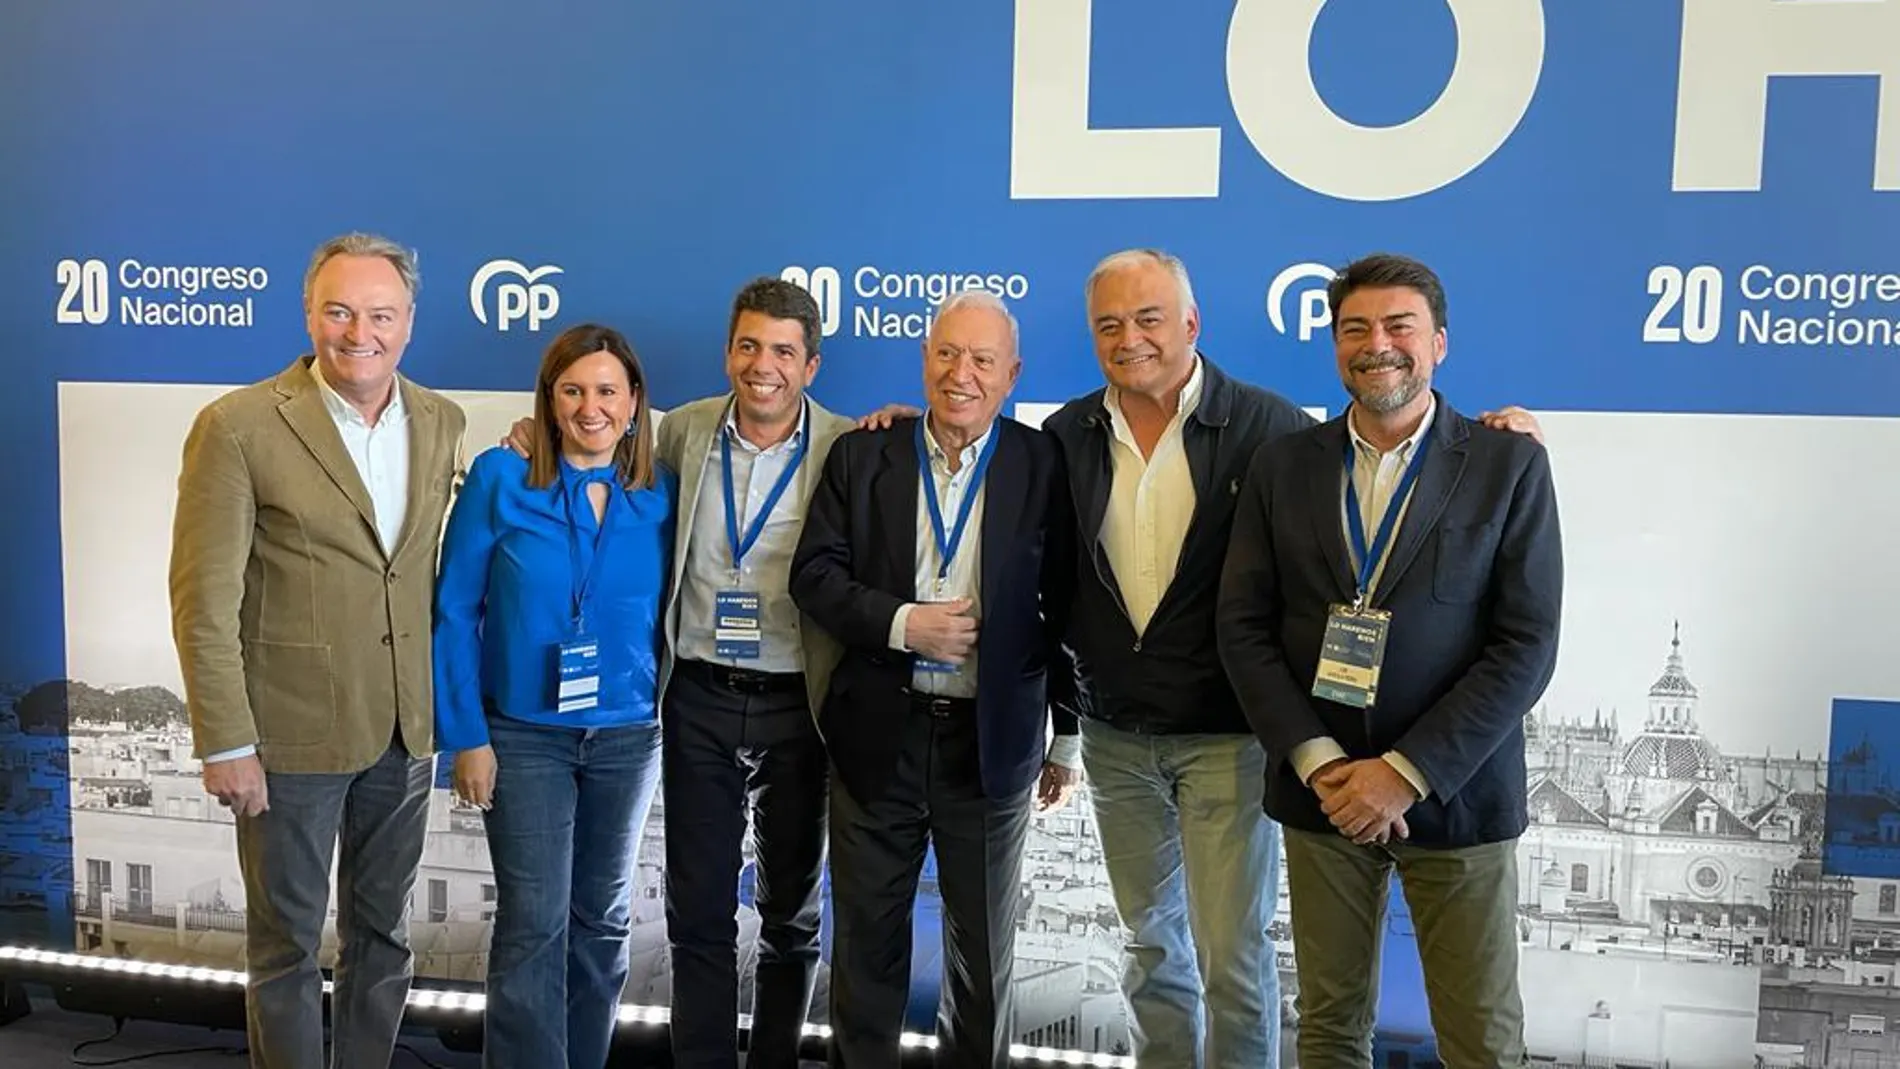 Alberto Fabra, María José Catalá, Carlos Mazón, García Margallo, González Pons y Luis Barcala